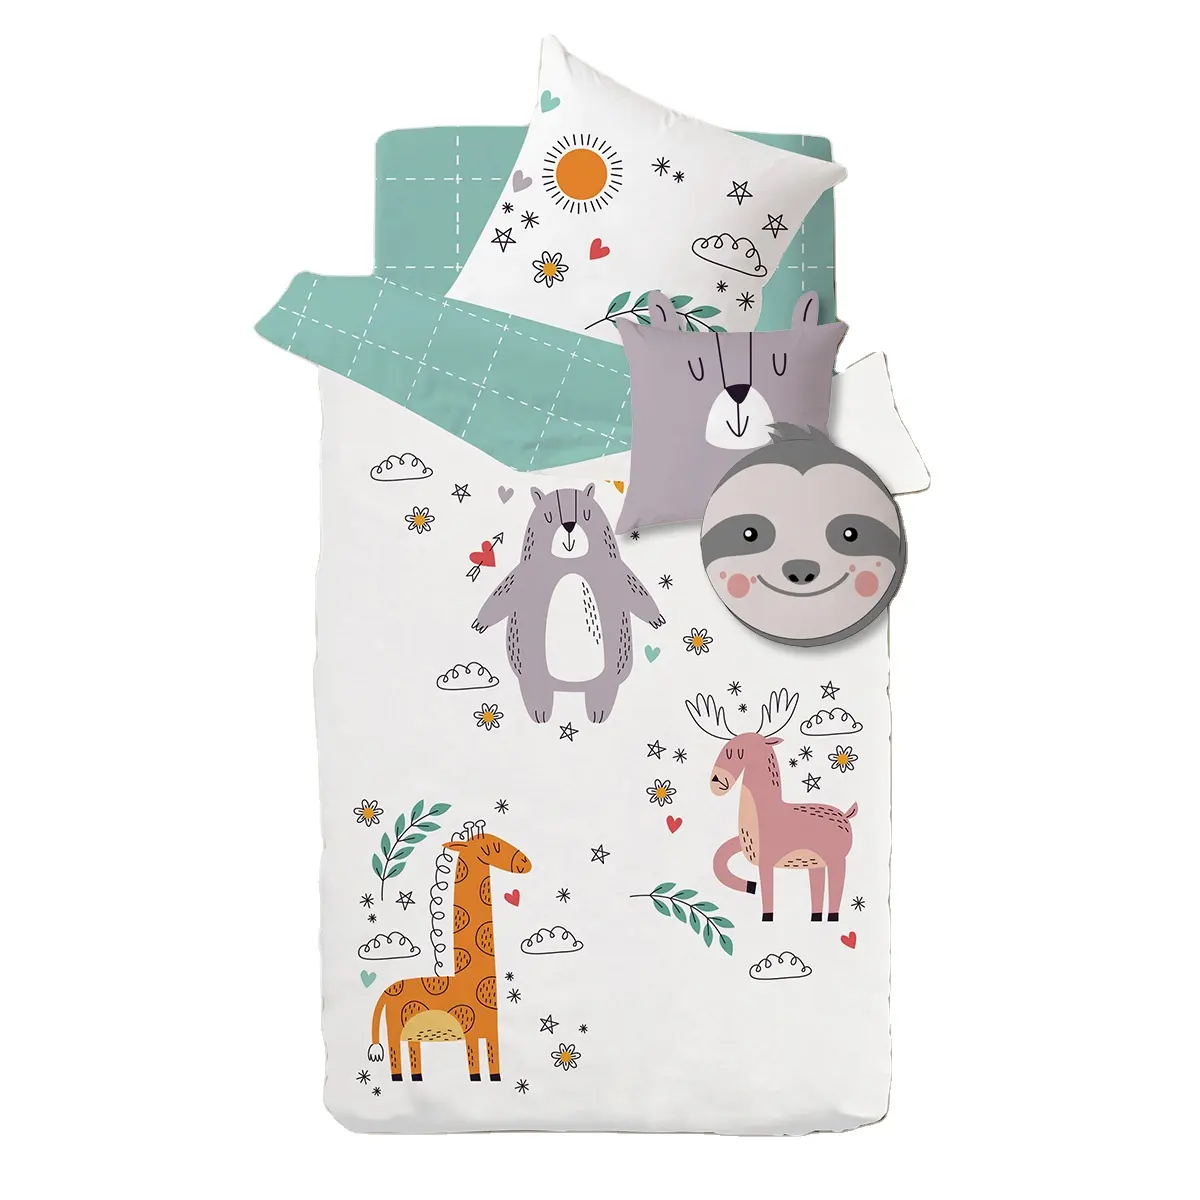 Parure de lit en coton pour enfants, draps personnalisés pour berceau de bébé fille, motif girafe ours, dessins animés, housse de coussin, 4 pièces